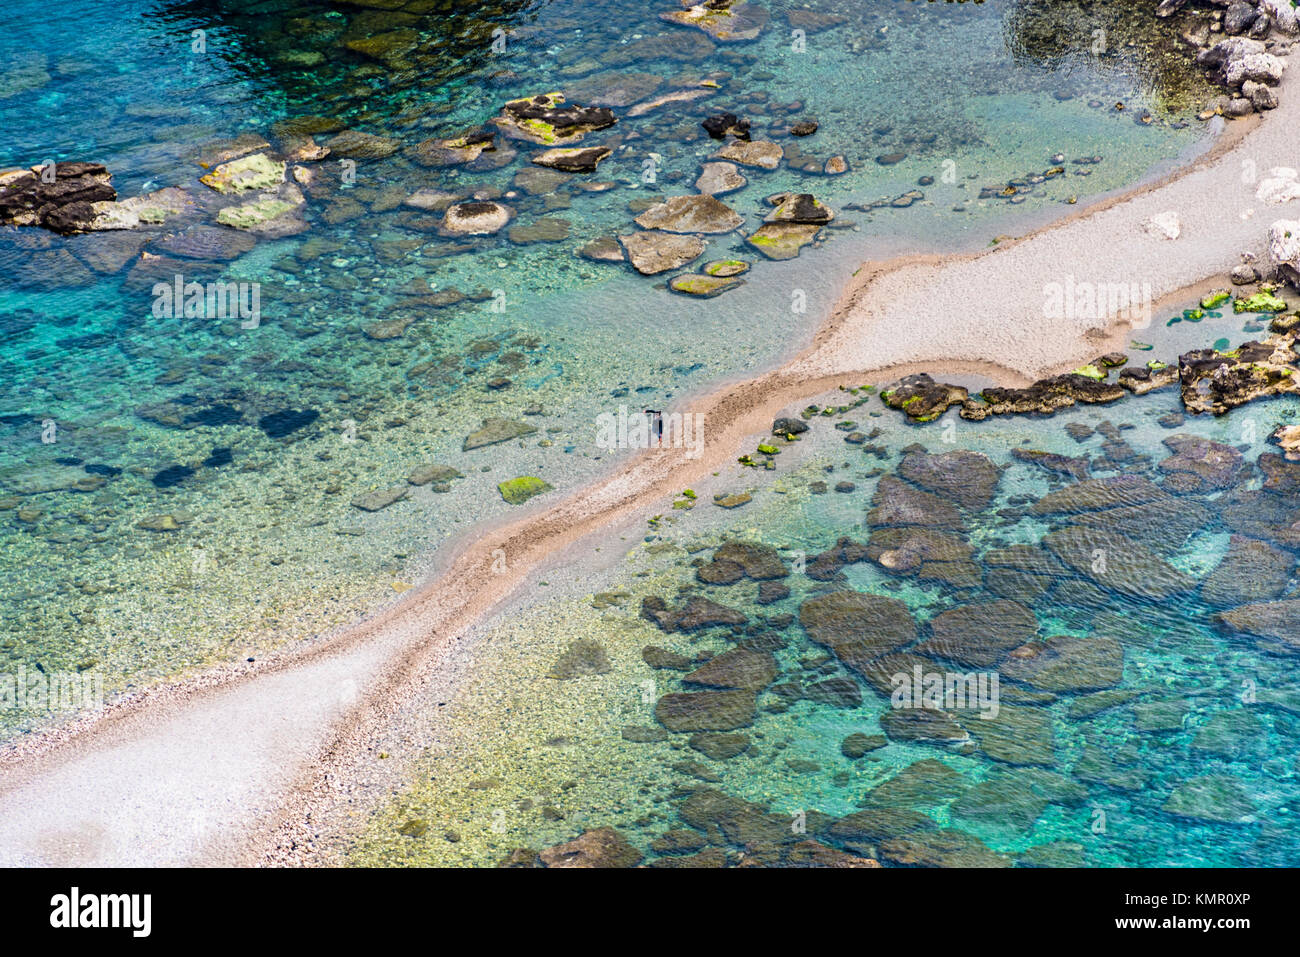 Réserve naturelle d'Isola Bella est une petite île, connue aussi comme "la perle de la Méditerranée', situé sur la côte de Taormina, Sicile. Banque D'Images